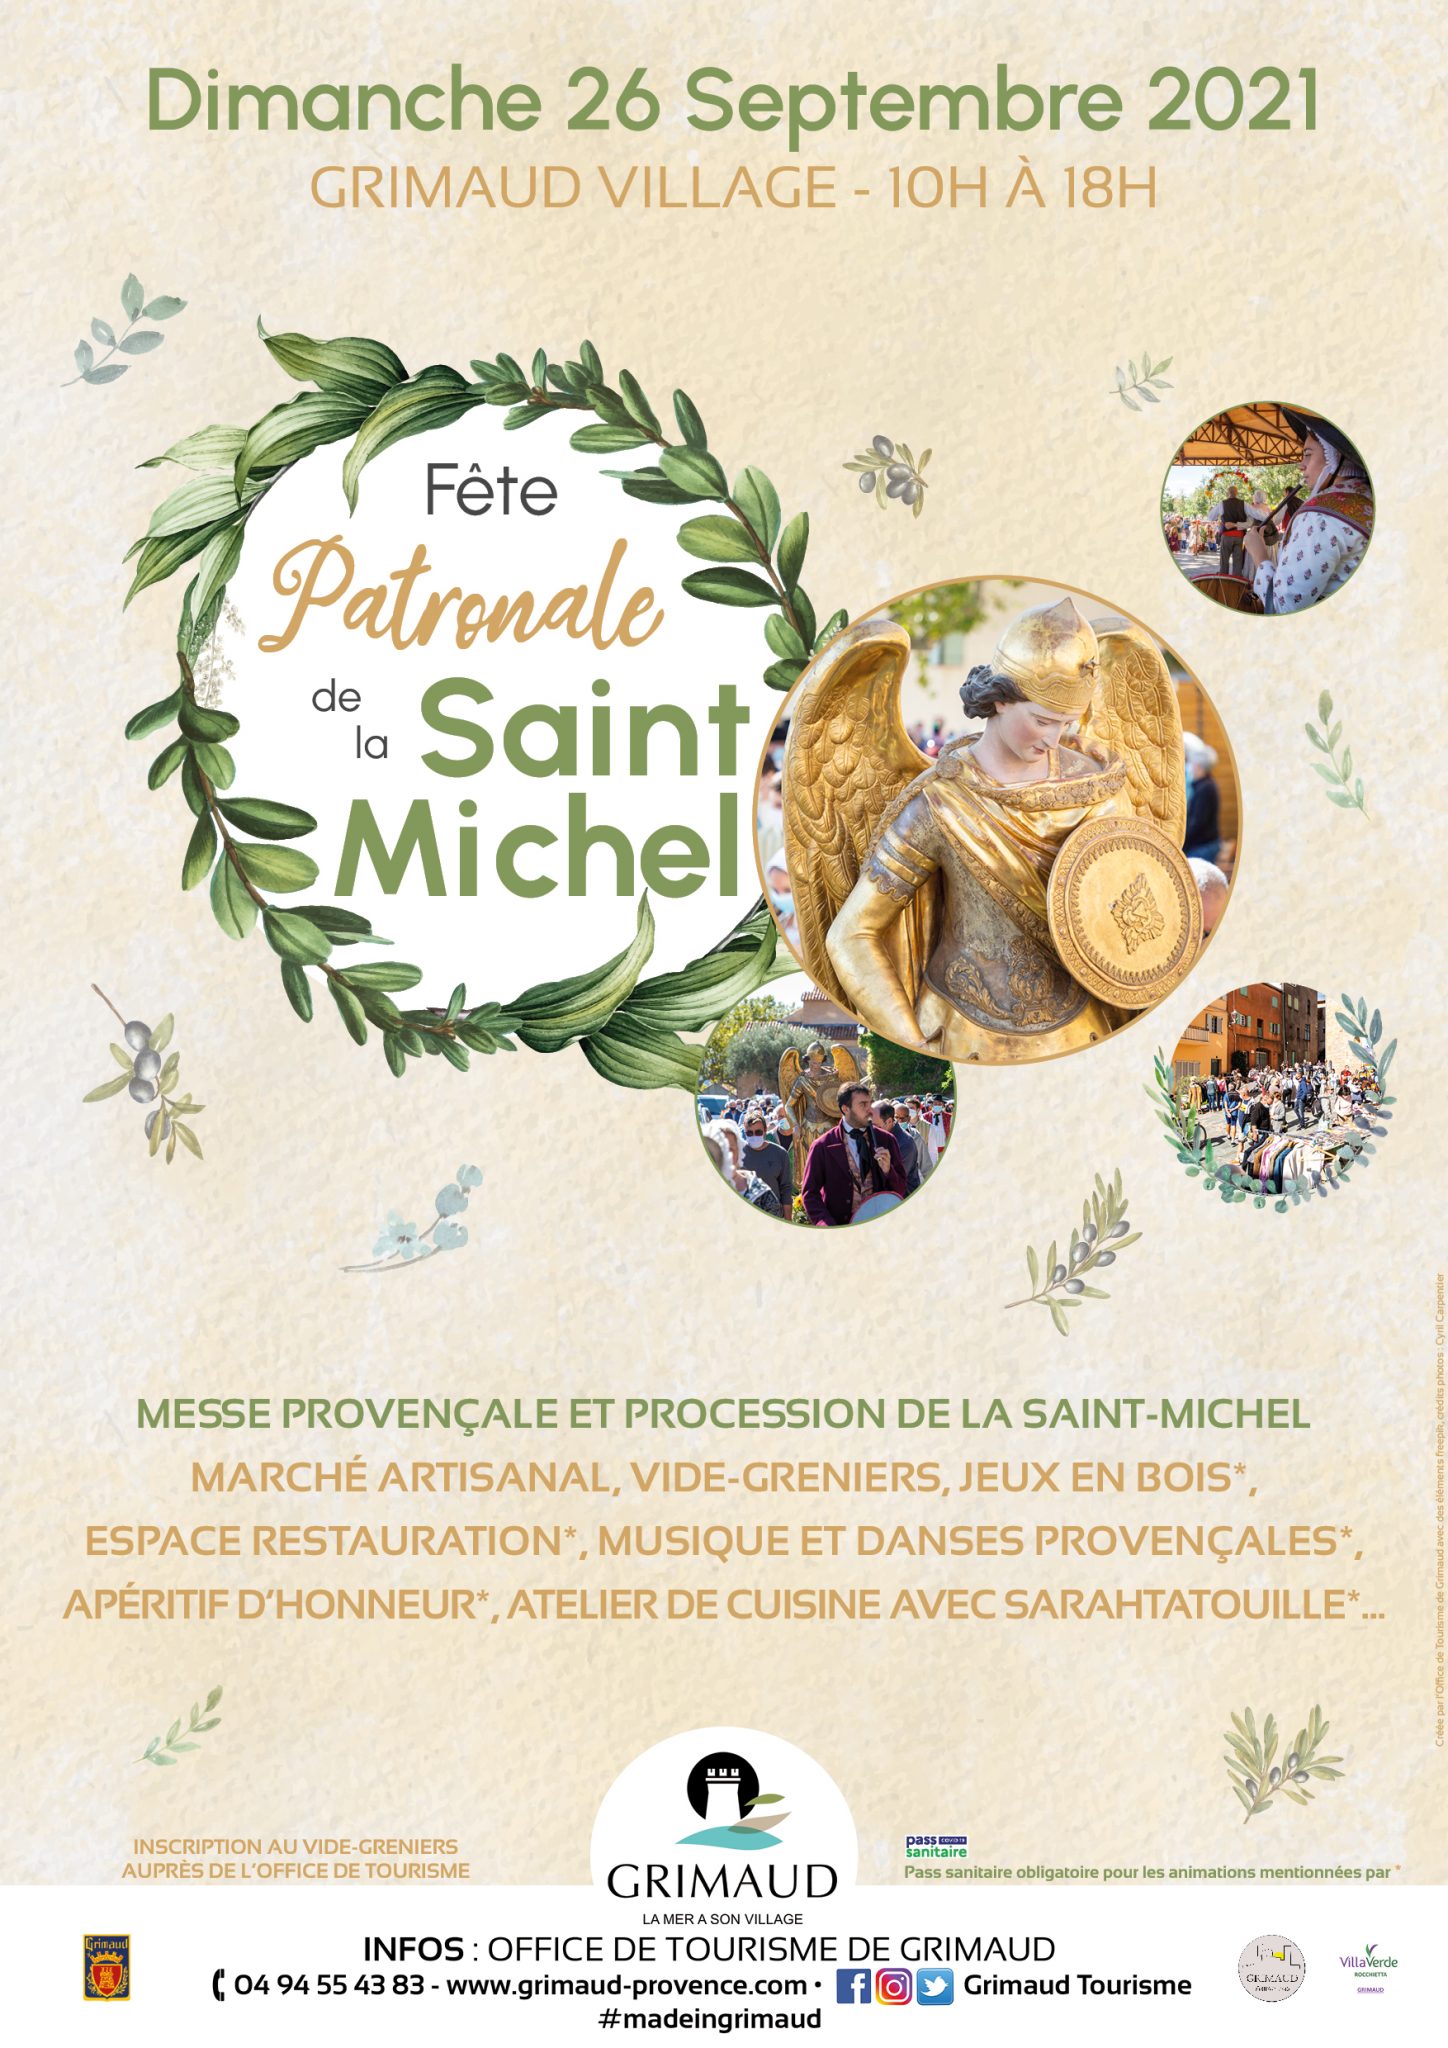 Dimanche 26 septembre 2021 - Fête patronale de la Saint-Michel